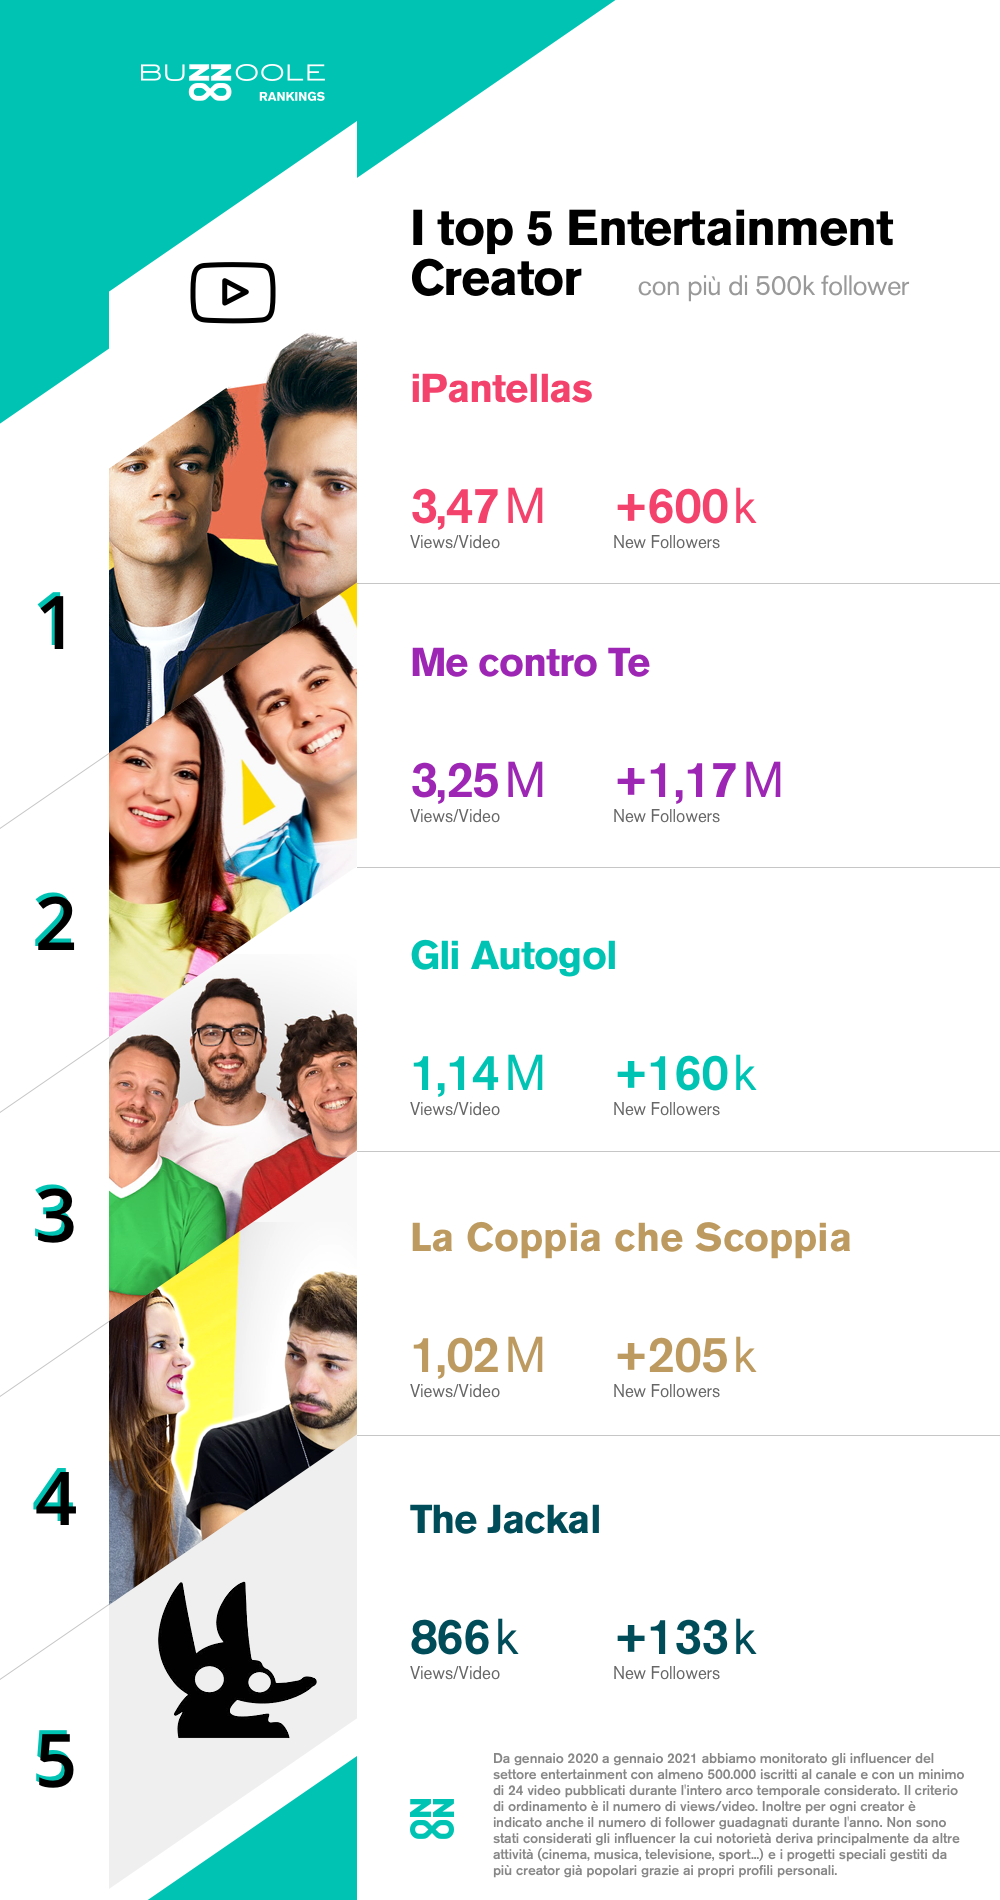 Classifica dei Top entertainment influencer italiani su YouTube del 2020:
1) iPantellas
2) Me Contro Te
3) Gli Autogol
4) La Coppia che Scoppia
5) The Jackal